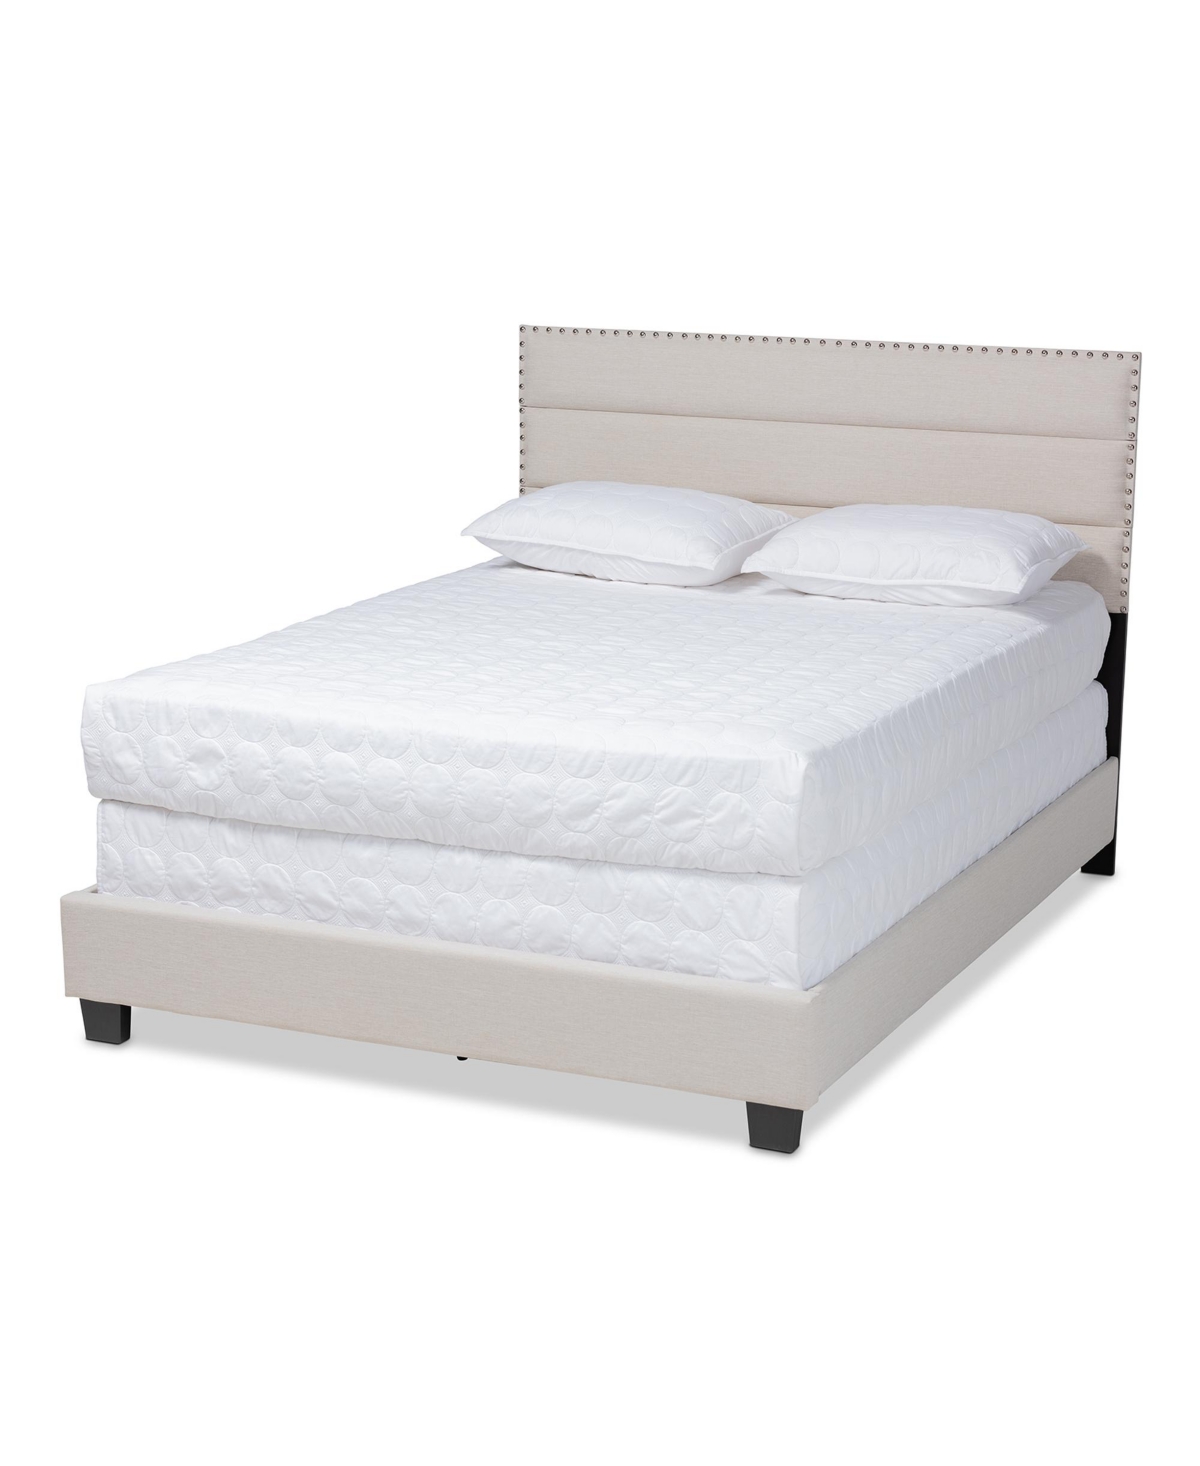 Ansa Upholstered Bed - Full